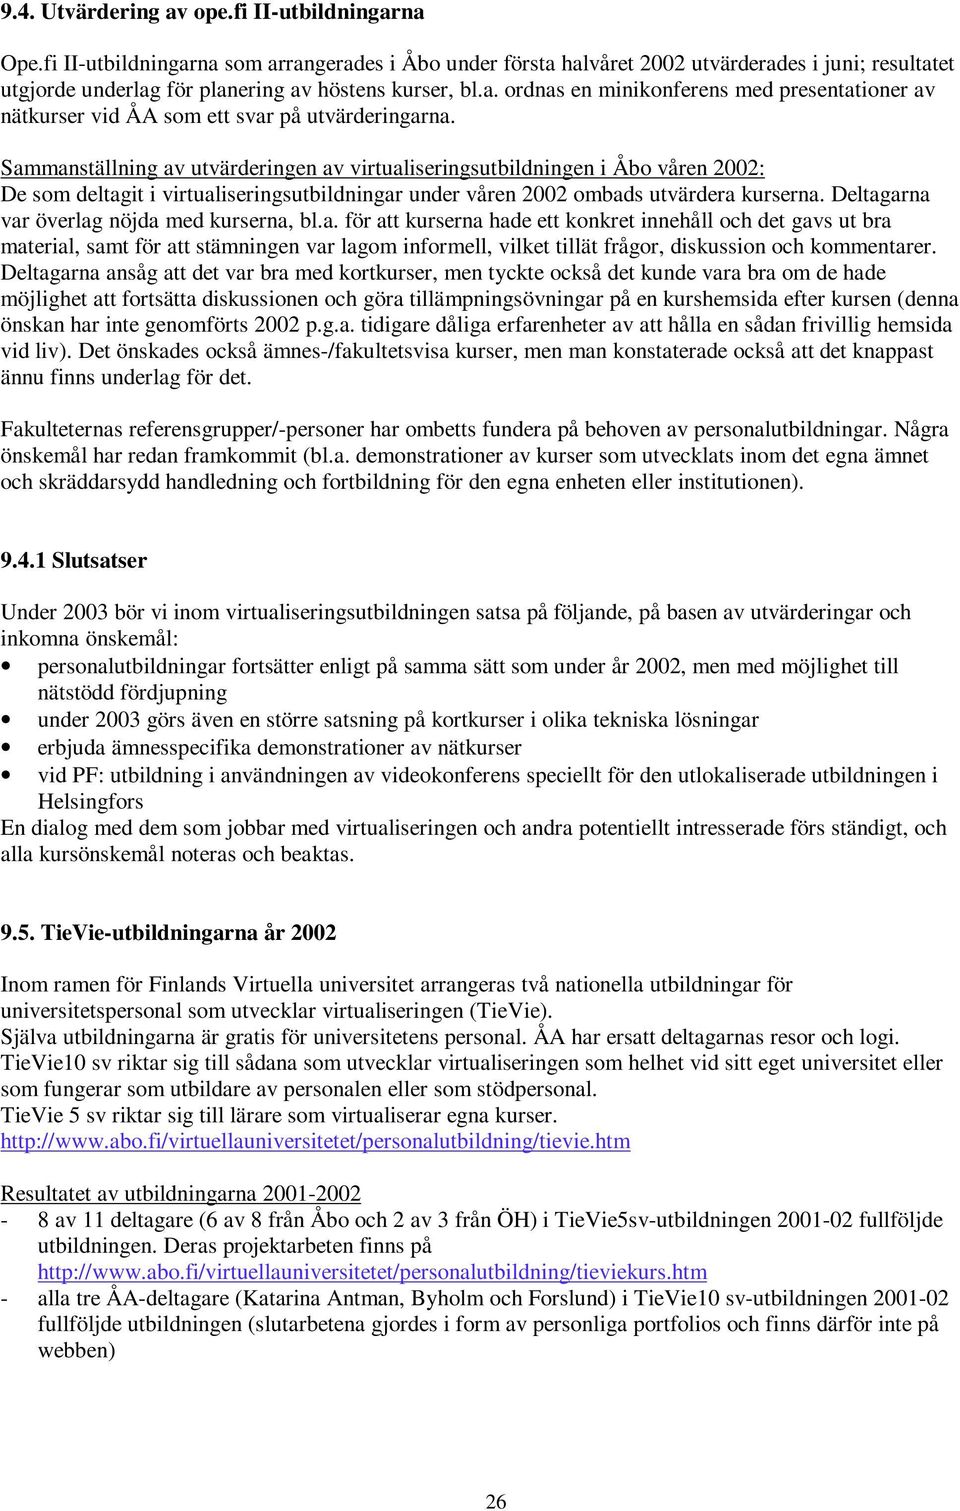 Sammanställning av utvärderingen av virtualiseringsutbildningen i Åbo våren 2002: De som deltagit i virtualiseringsutbildningar under våren 2002 ombads utvärdera kurserna.